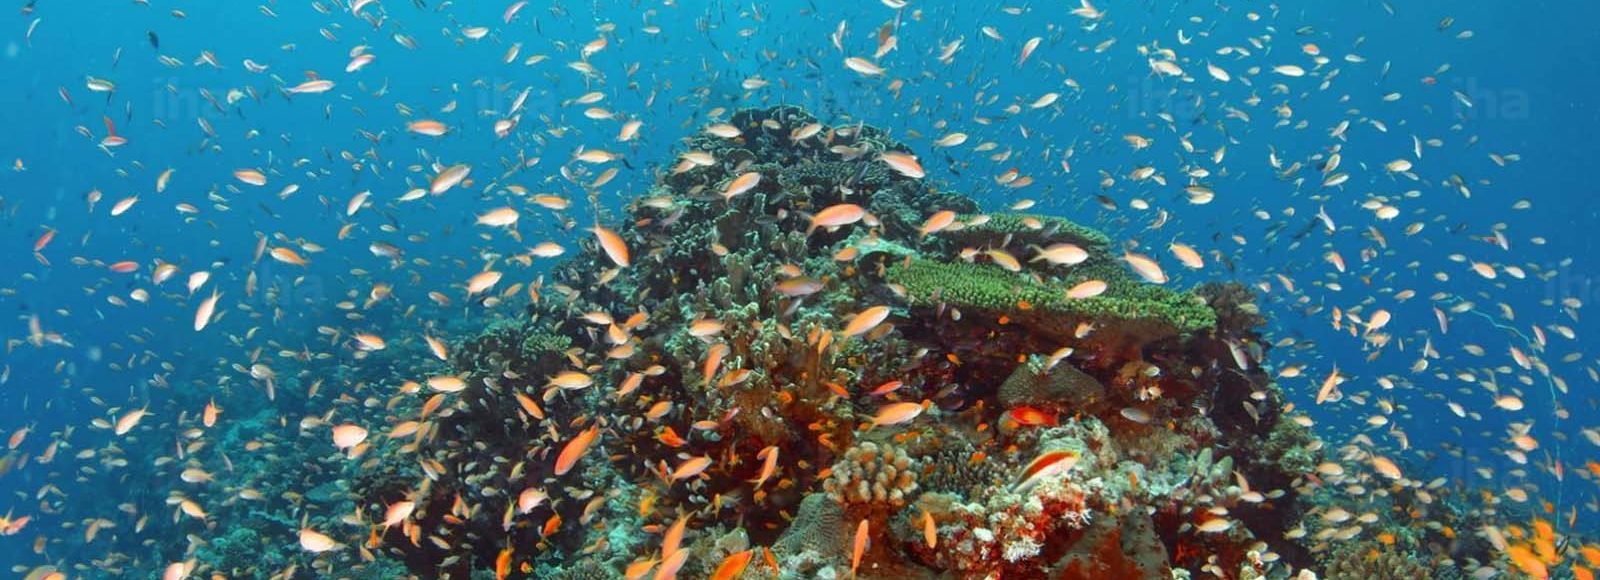 Coral reef in Indian Ocean